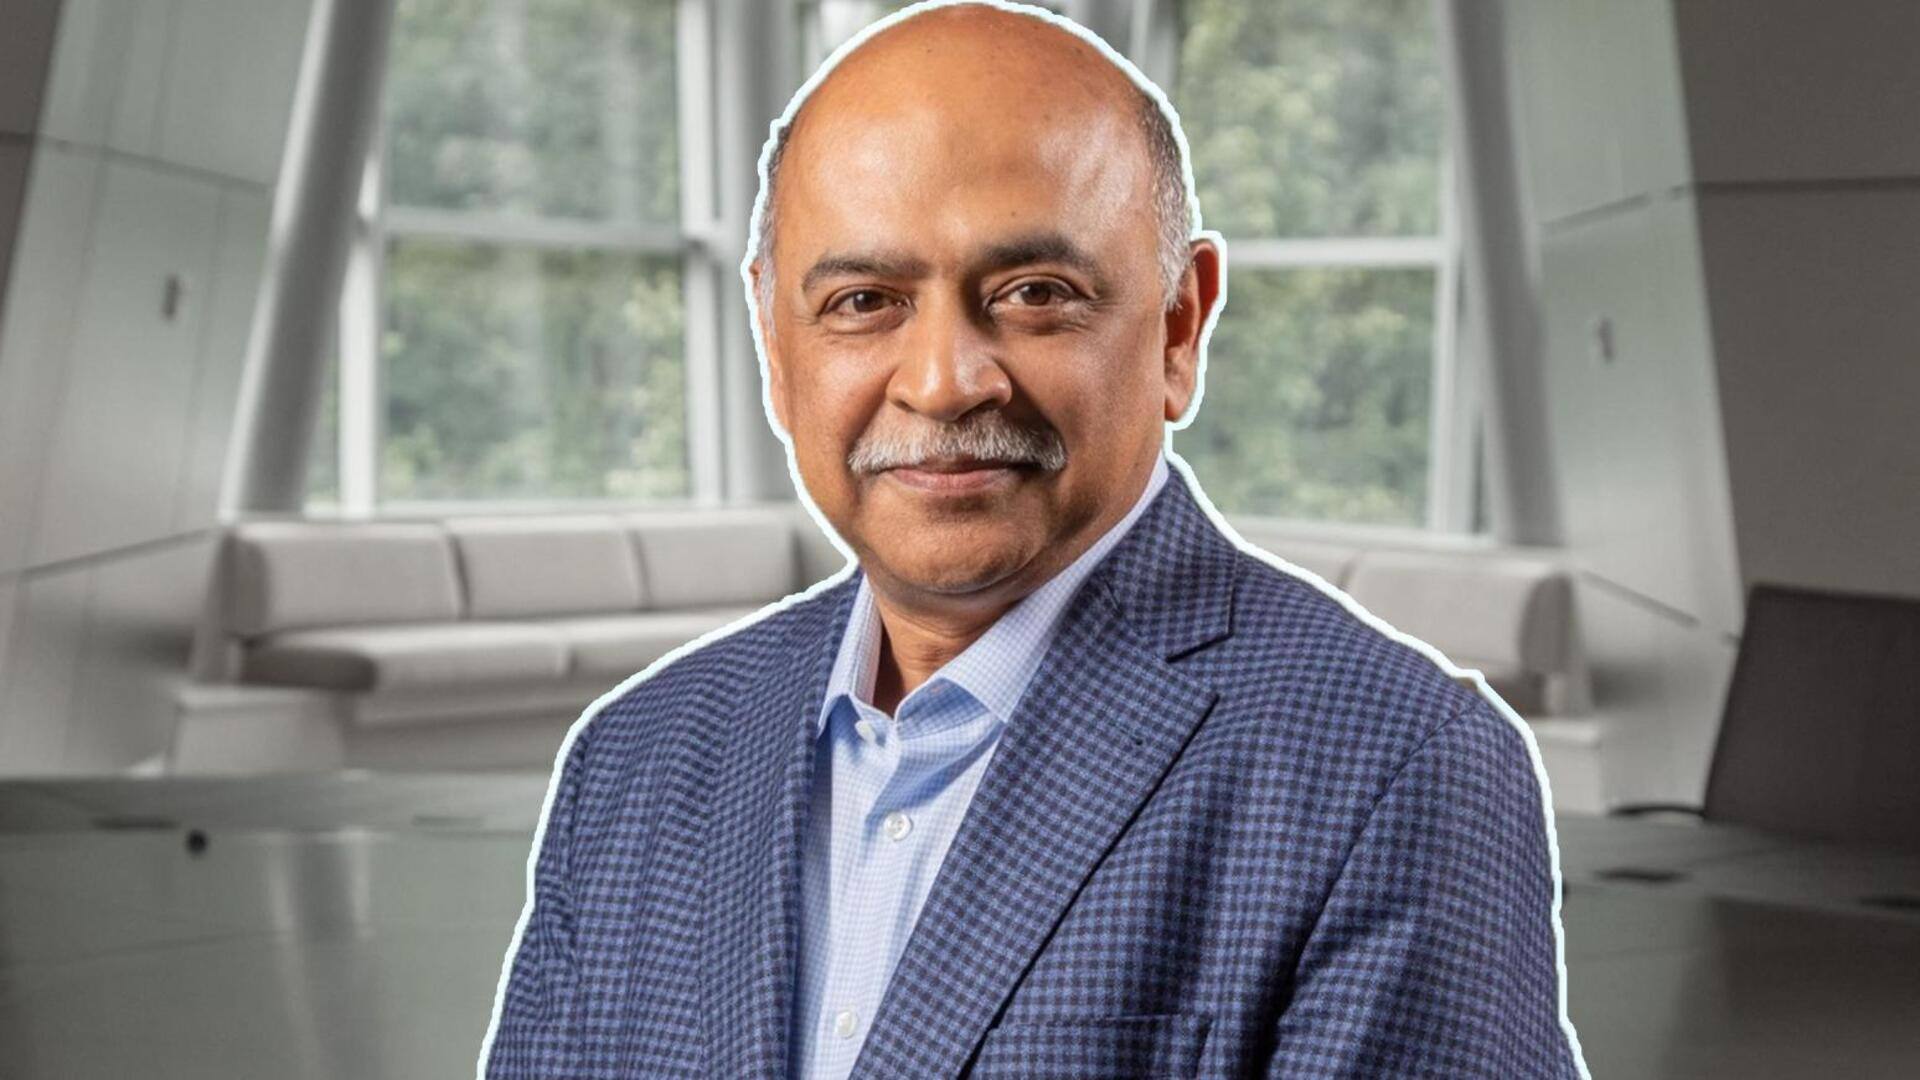 IBM के CEO अरविंद कृष्ण ने AI सेक्टर में किया कंपनी का विस्तार, जानिए इनकी संपत्ति